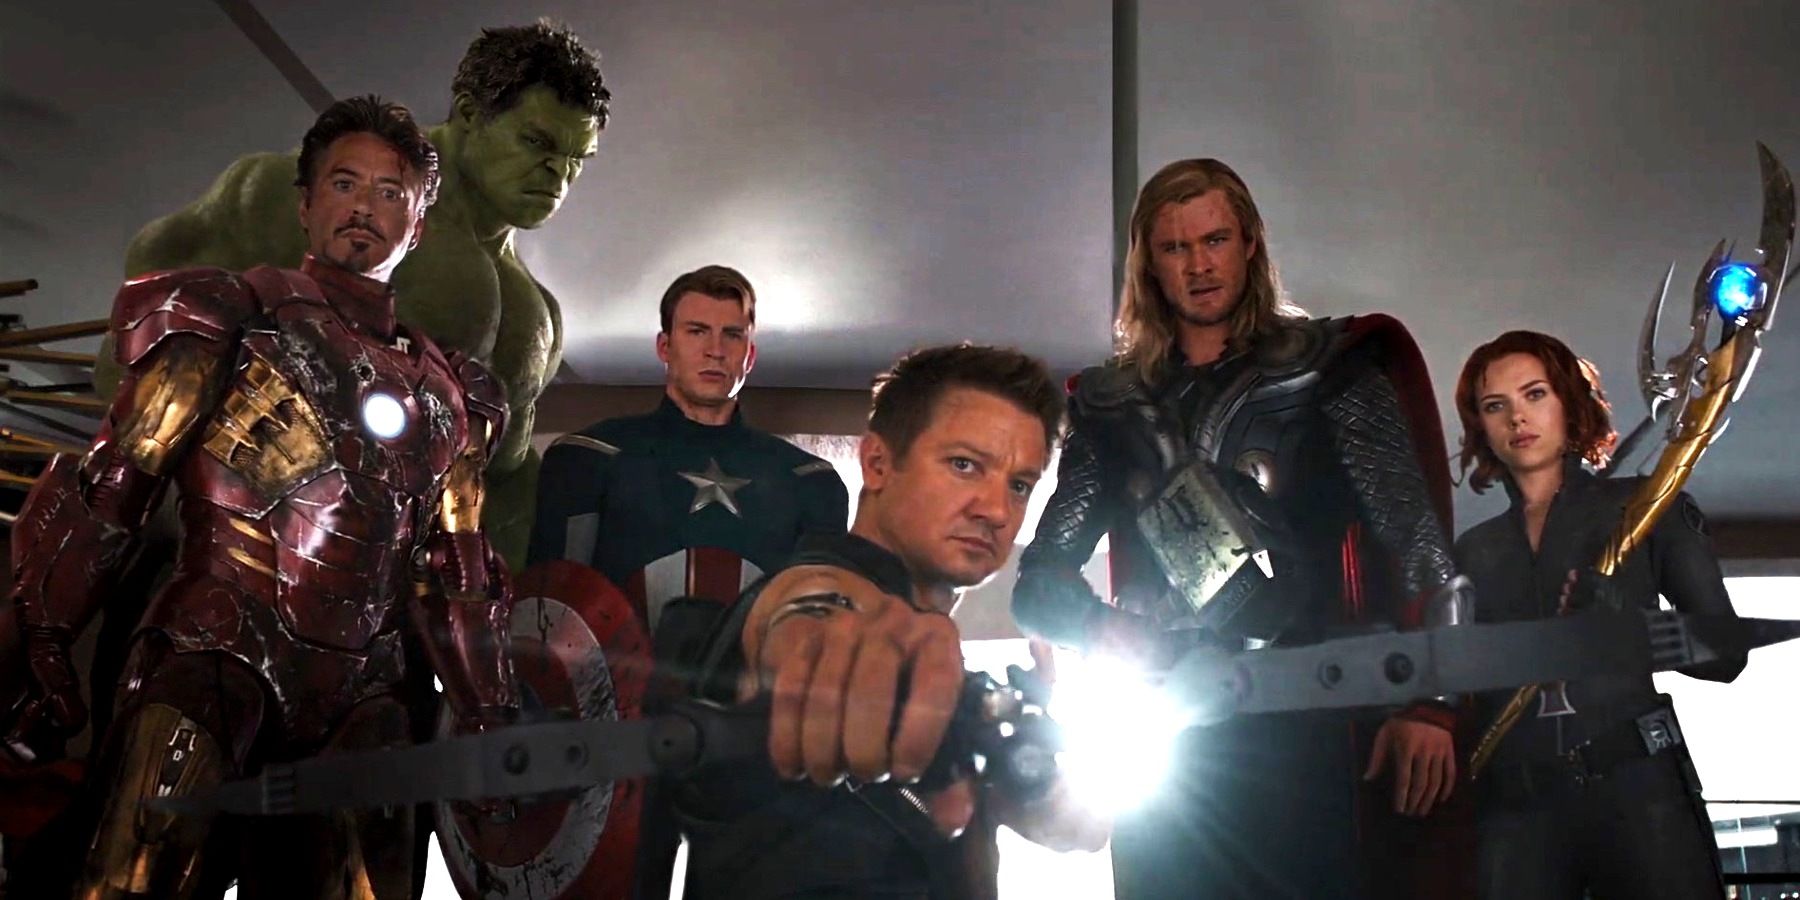 Robert Downey Jr, Mark Ruffalo, Chris Evans, Jeremy Renner, Chris Hemsworth and Scarlett Johansson in The Avengers